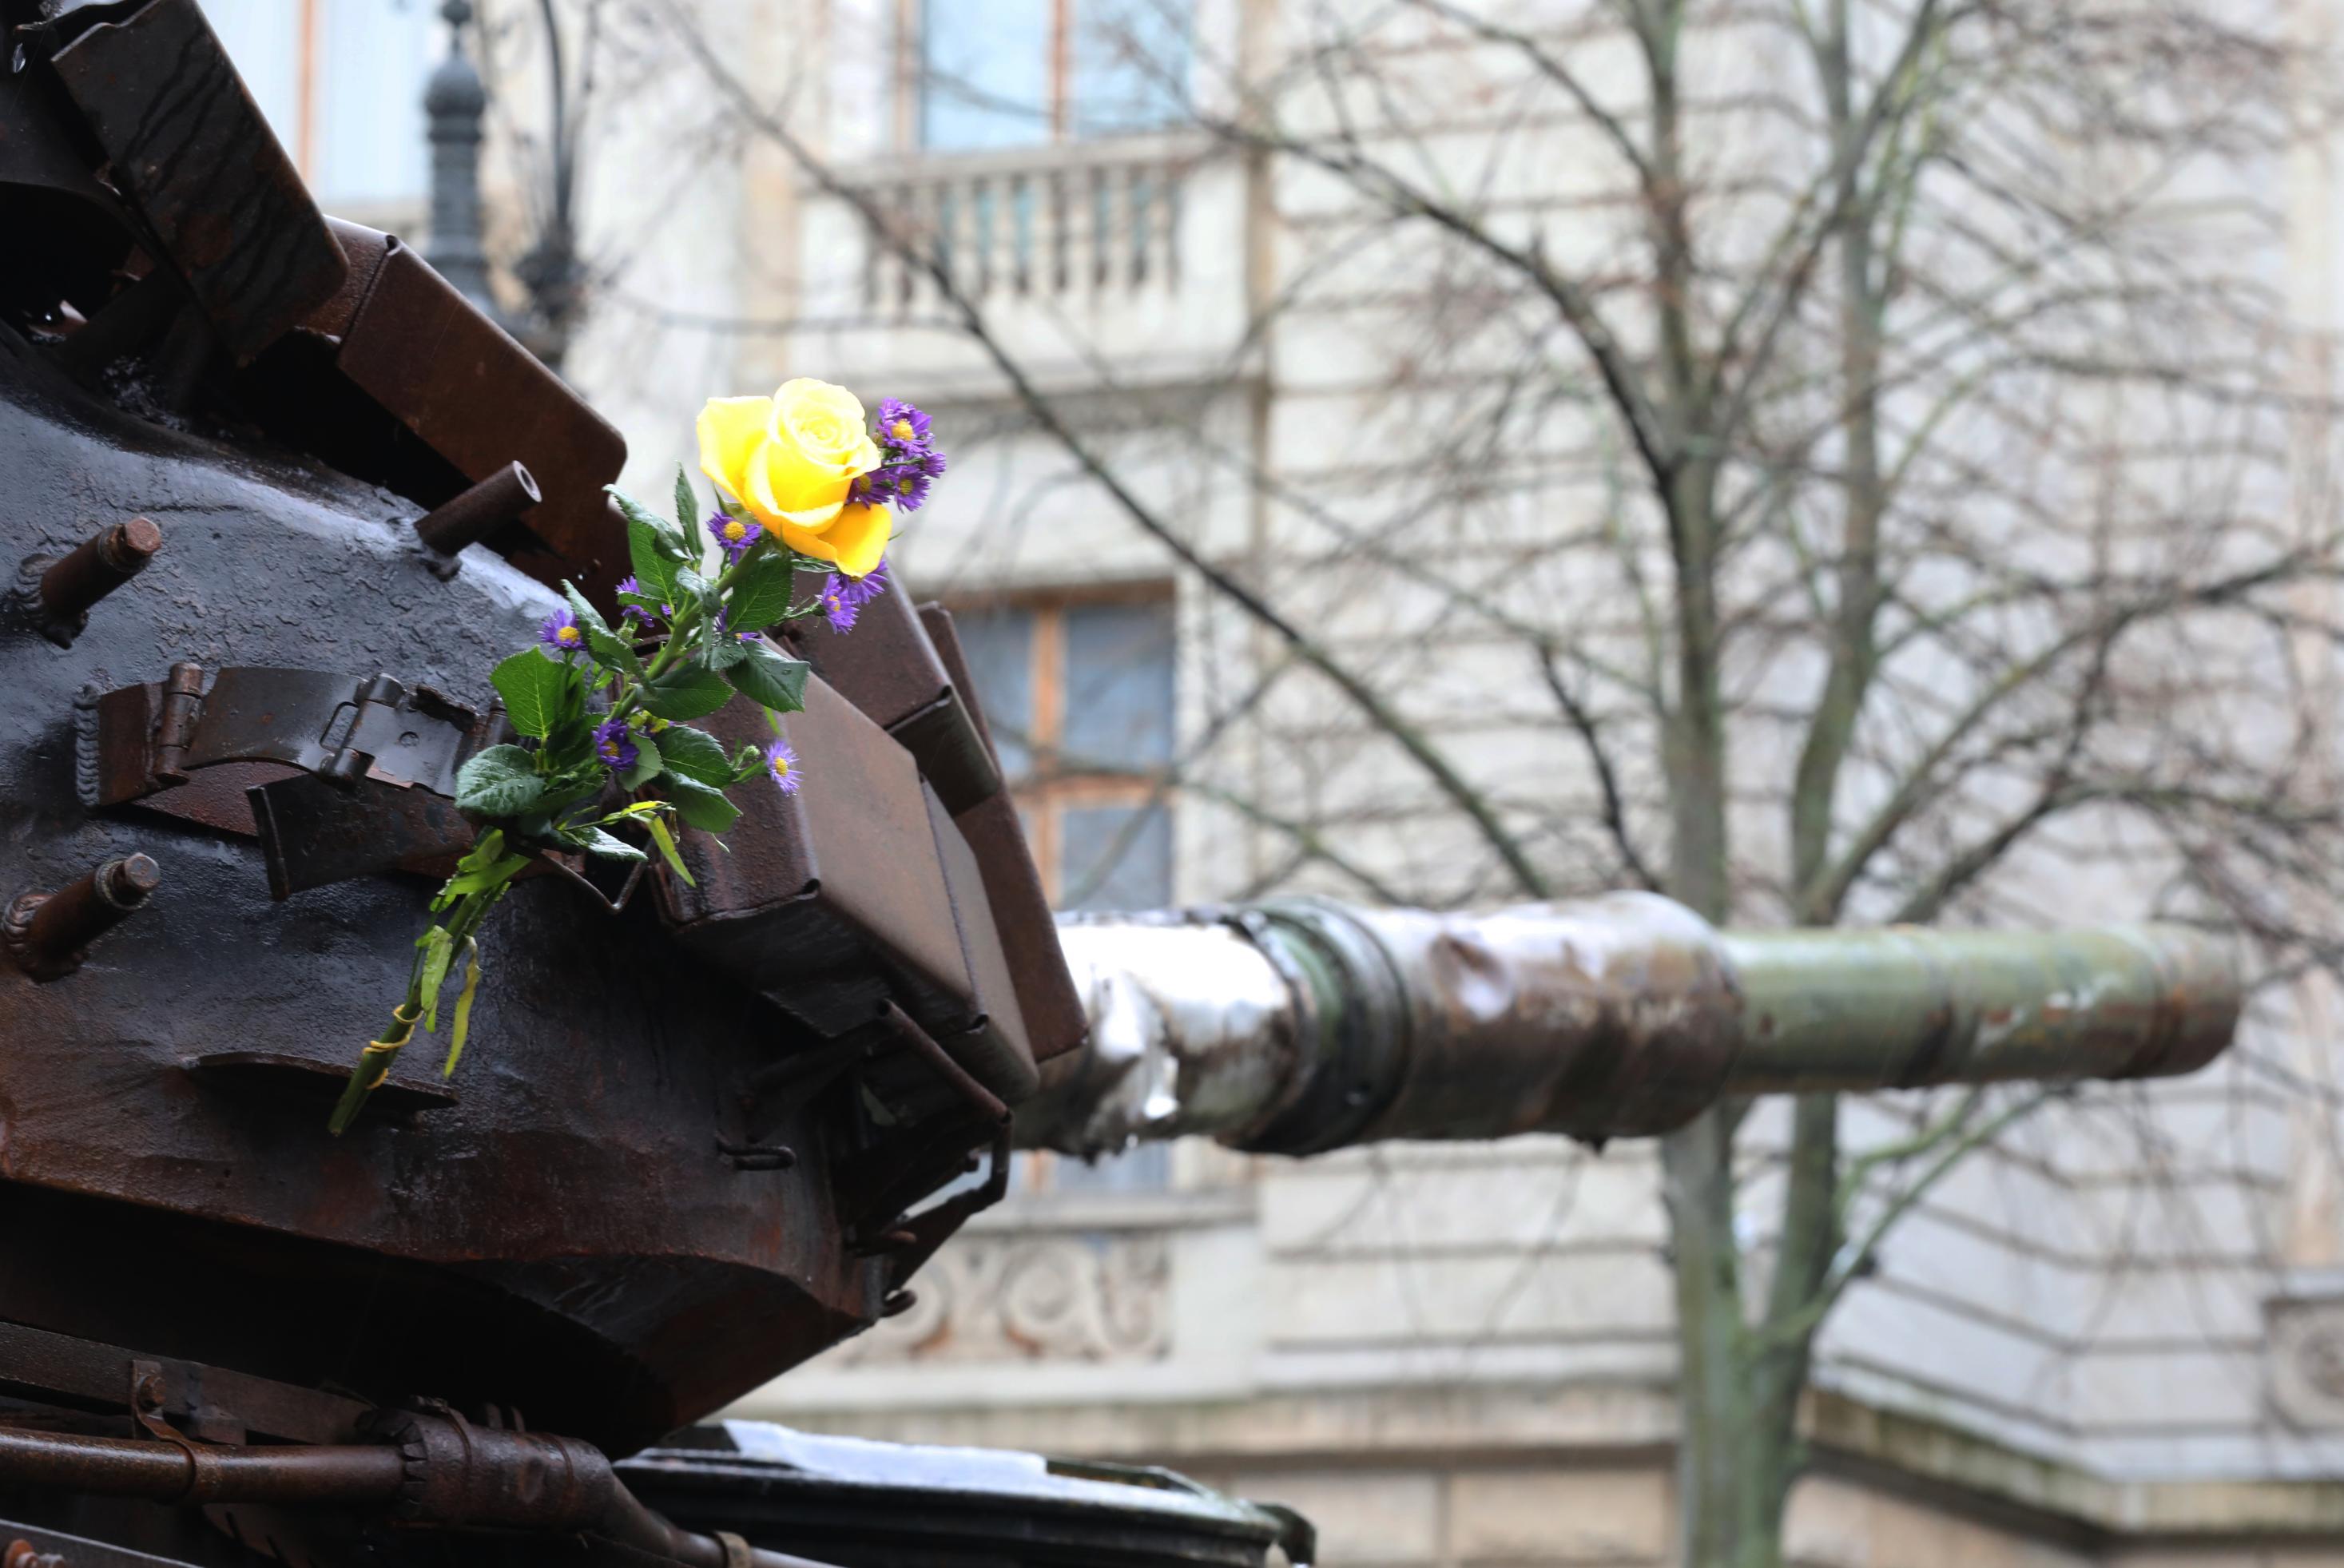 Panzerwrack vor russischer Botschaft mit Blumen